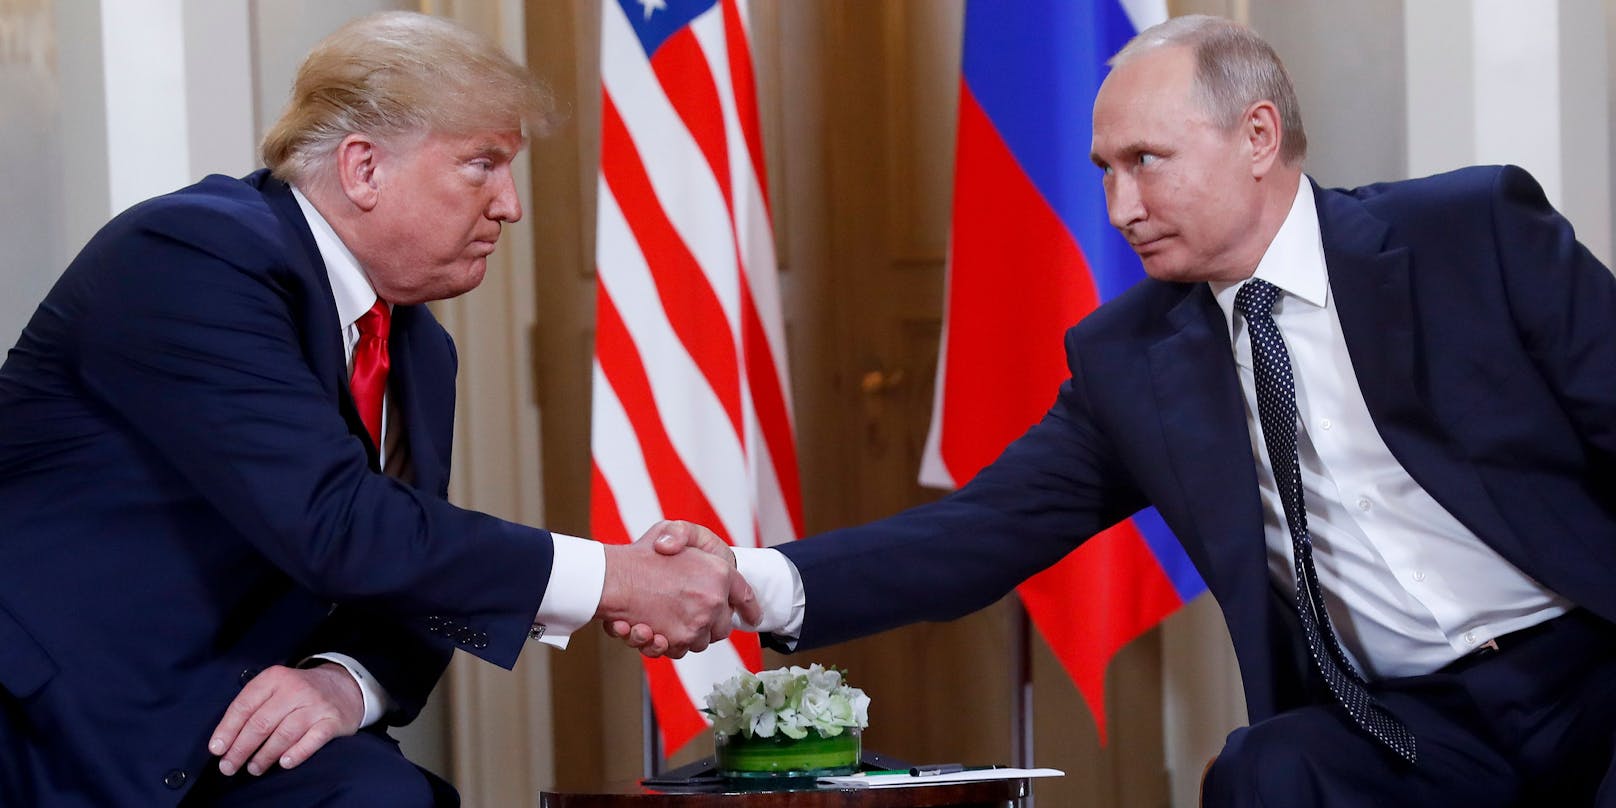 Donald Trump pflegte stets ein freundliches Verhältnis zu Wladimir Putin. Nach dem Einmarsch in die Ukraine distanziert er sich plötzlich von dem russischen Präsidenten.